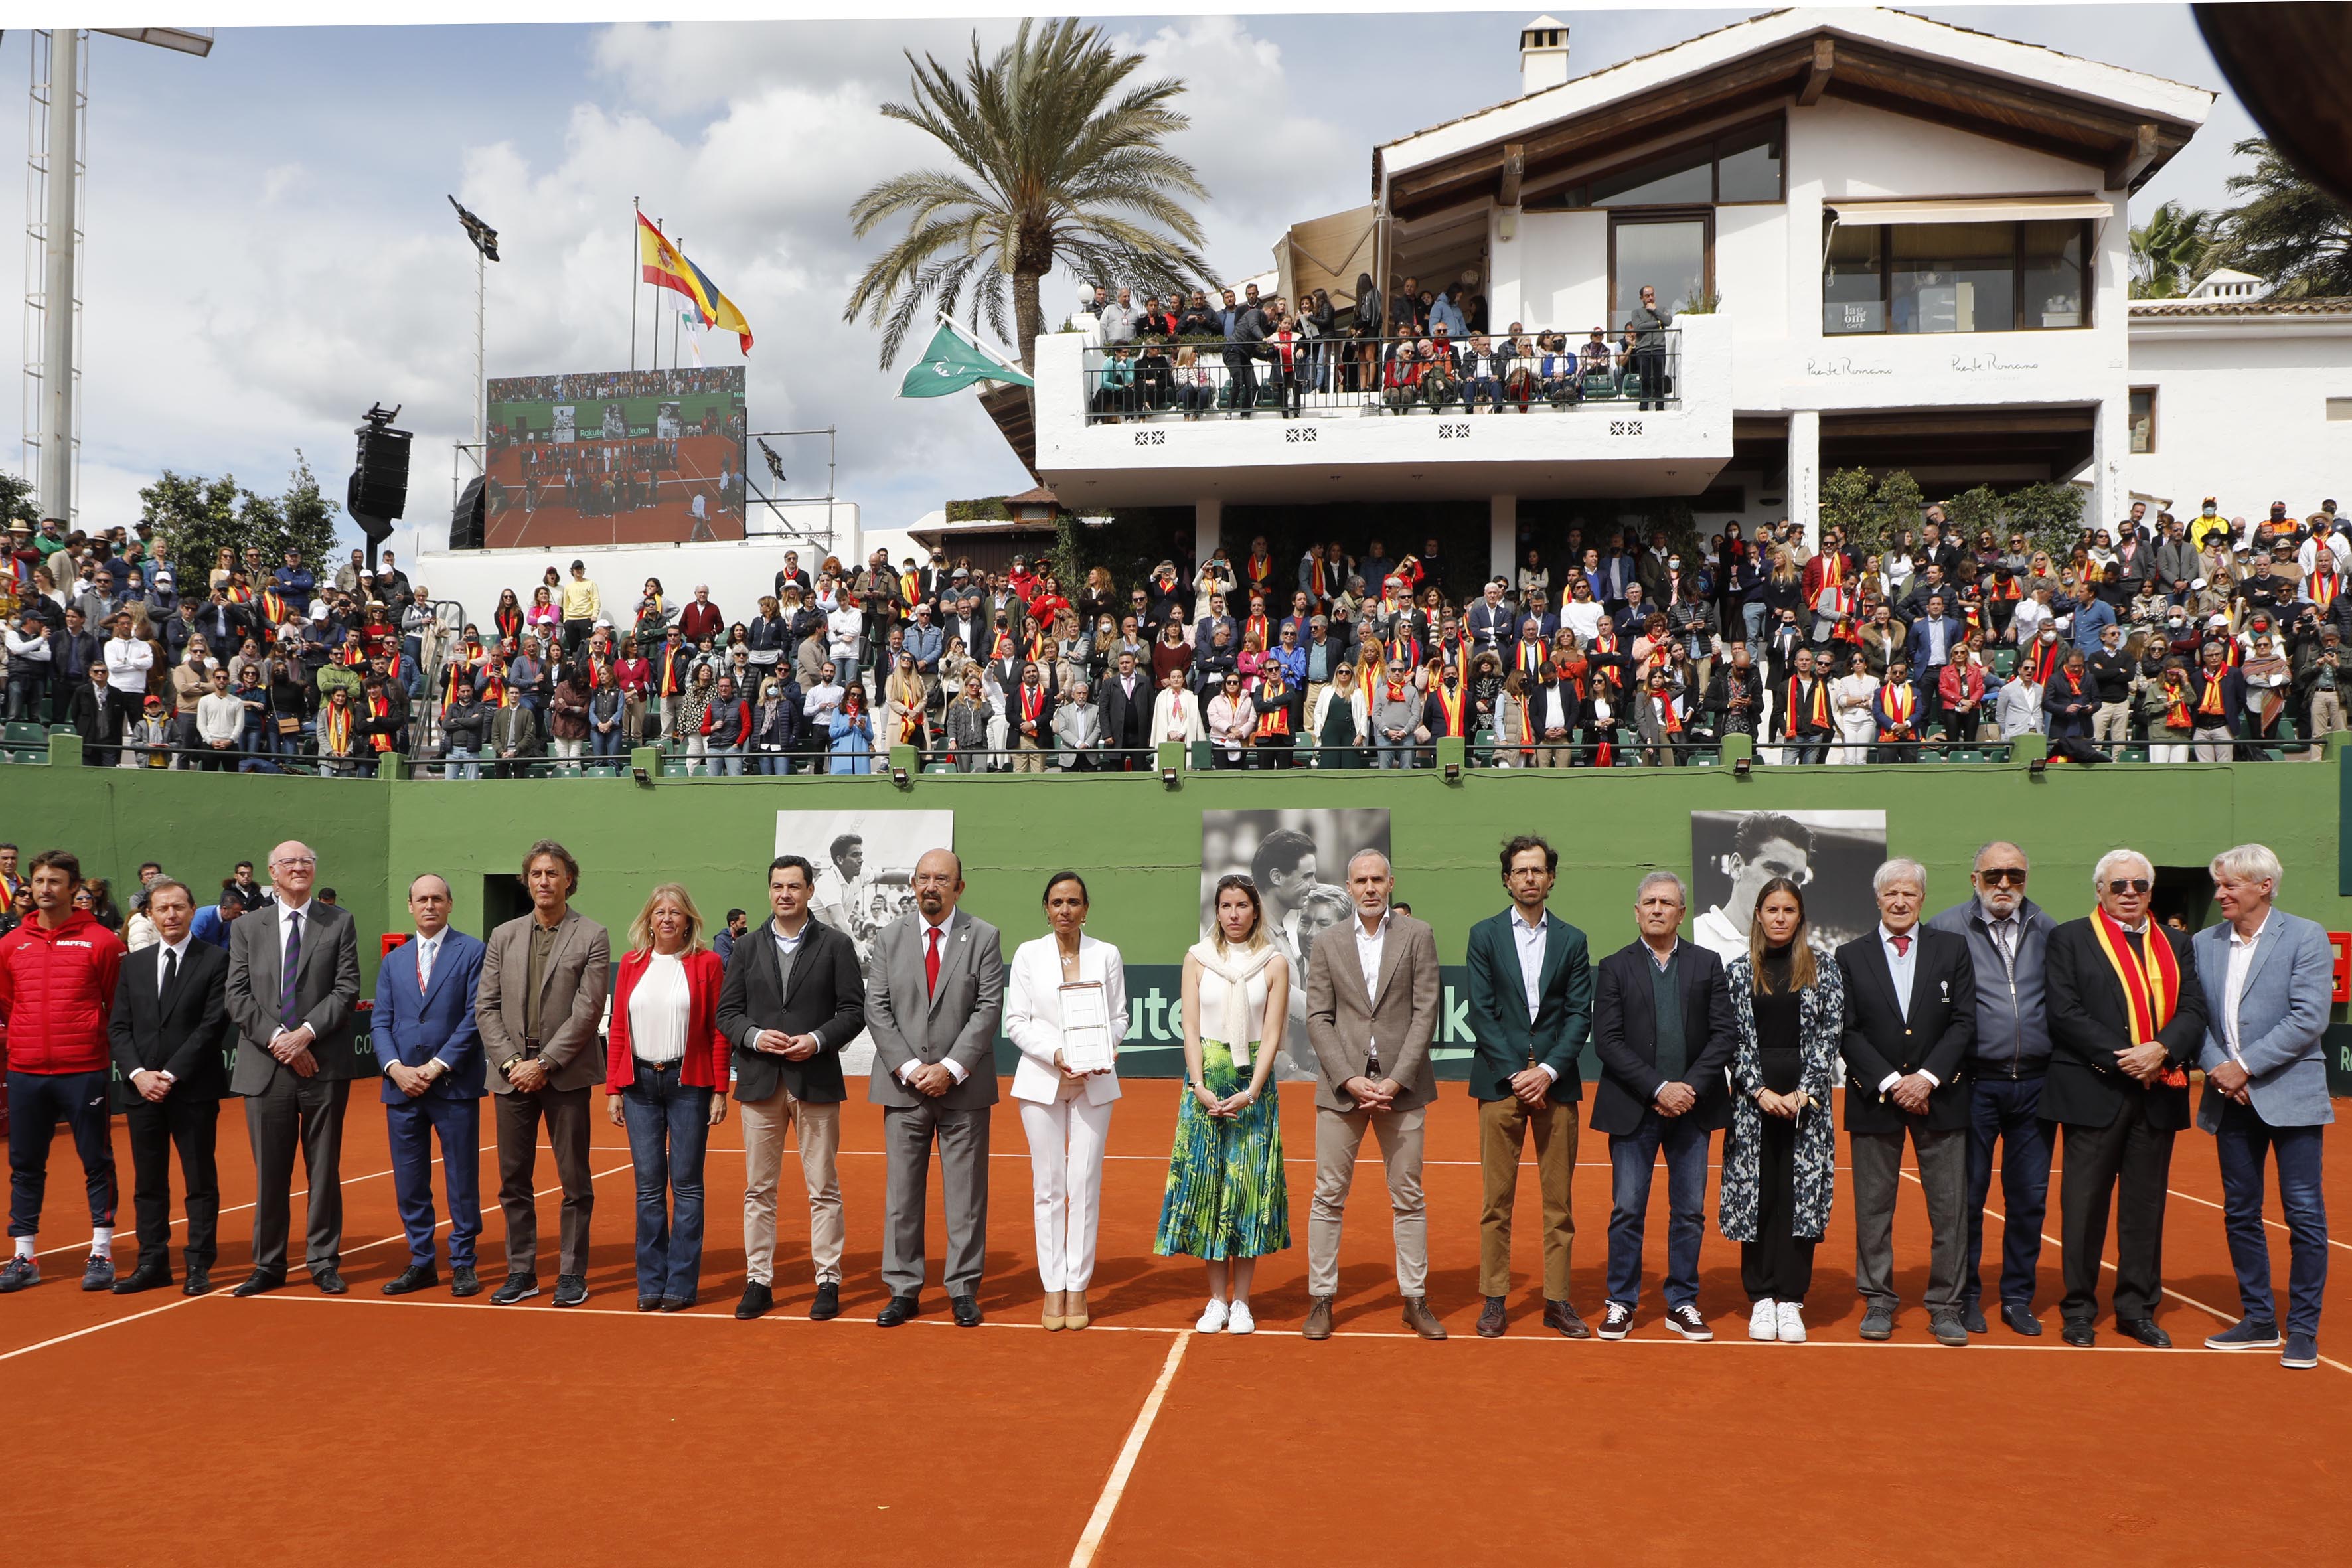 La alcaldesa y el presidente de la Junta destacan “la gran capacidad de promoción” de la Copa Davis para Marbella y Andalucía y recuerdan la labor como embajador del extenista Manolo Santana